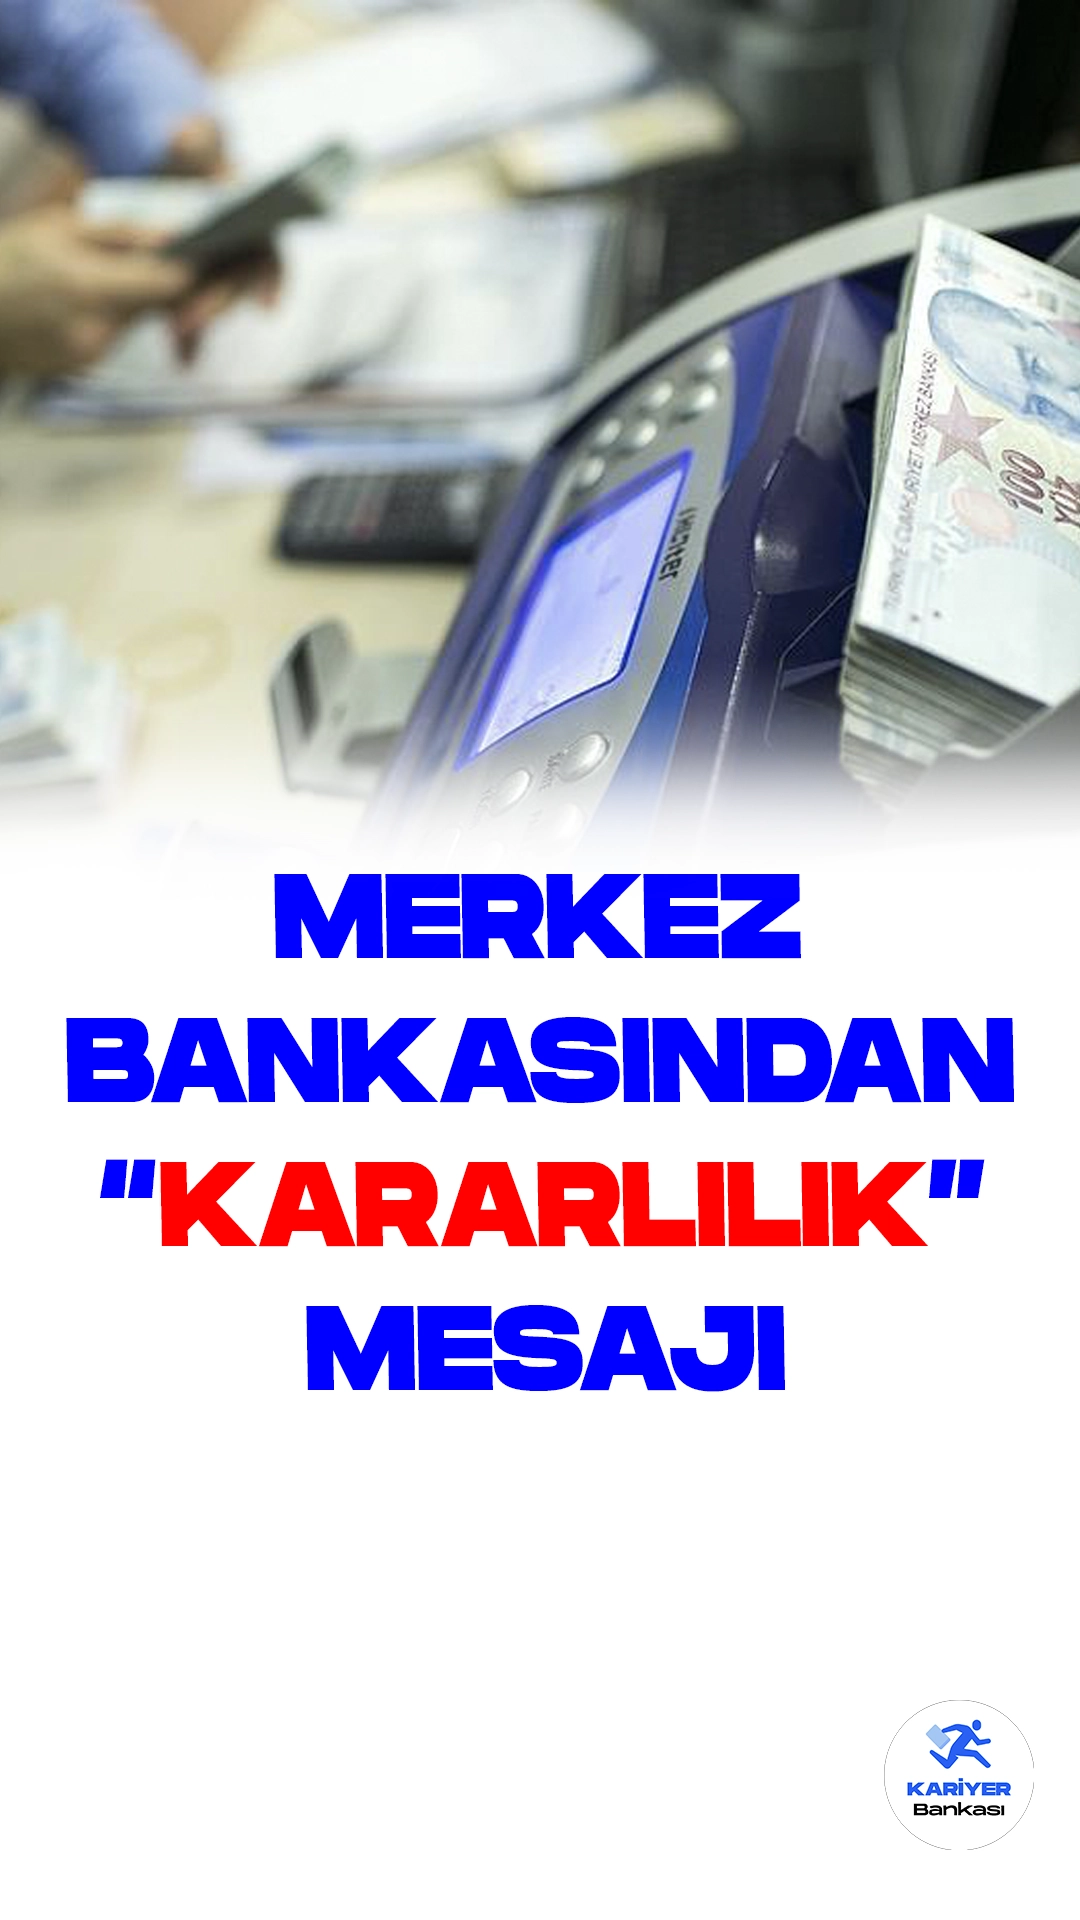 Merkez Bankasından Yabancı Yatırım Bankalarına "Kararlılık" Mesajı.Merkez Bankası'nın sıkılaştırma politikalarıyla Türkiye'nin 5 yıllık kredi risk primi (CDS) düşüş trendini sürdürüyor. Özellikle, Merkez Bankası Başkanı Hafize Gaye Erkan'ın Enflasyon Raporu sunumunda vurguladığı enflasyonla mücadele kararlılığı, uluslararası yatırım bankaları tarafından önemle analiz edildi.